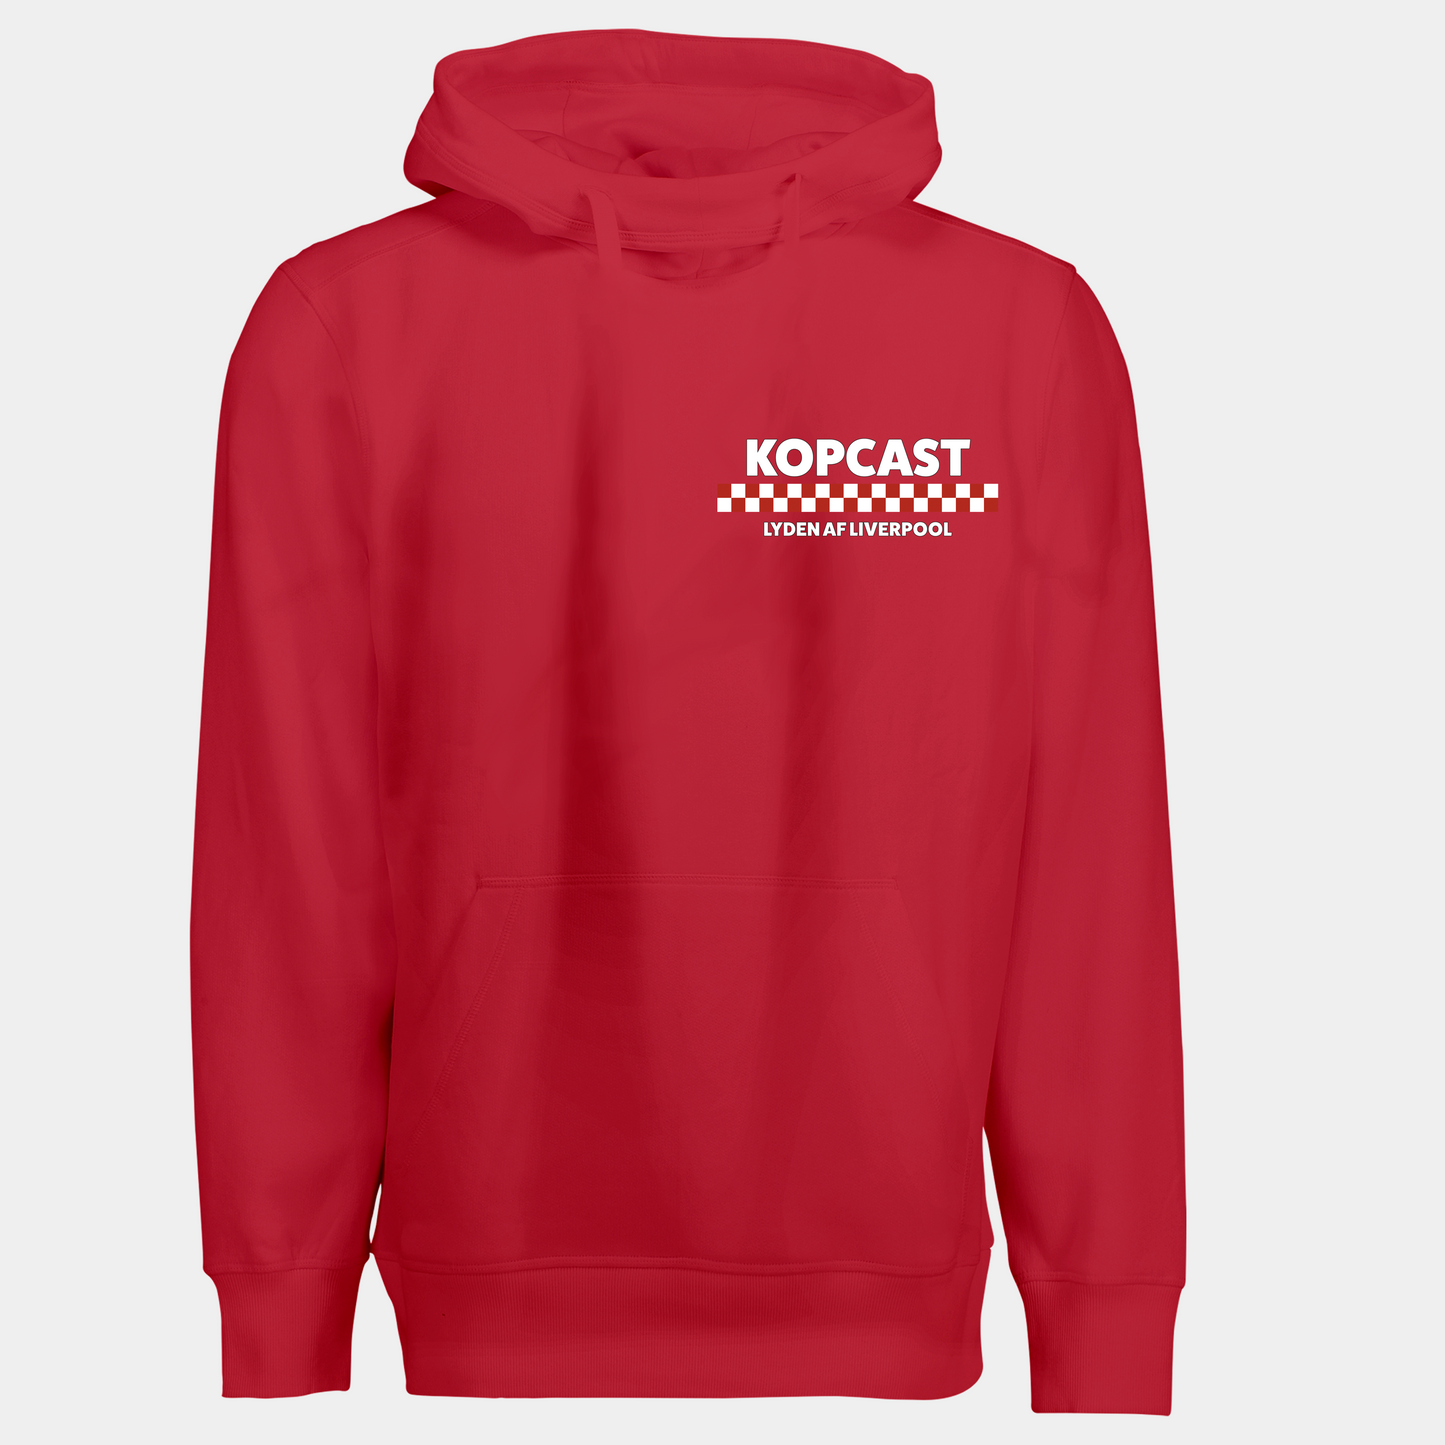 Kopcast - Hoodie